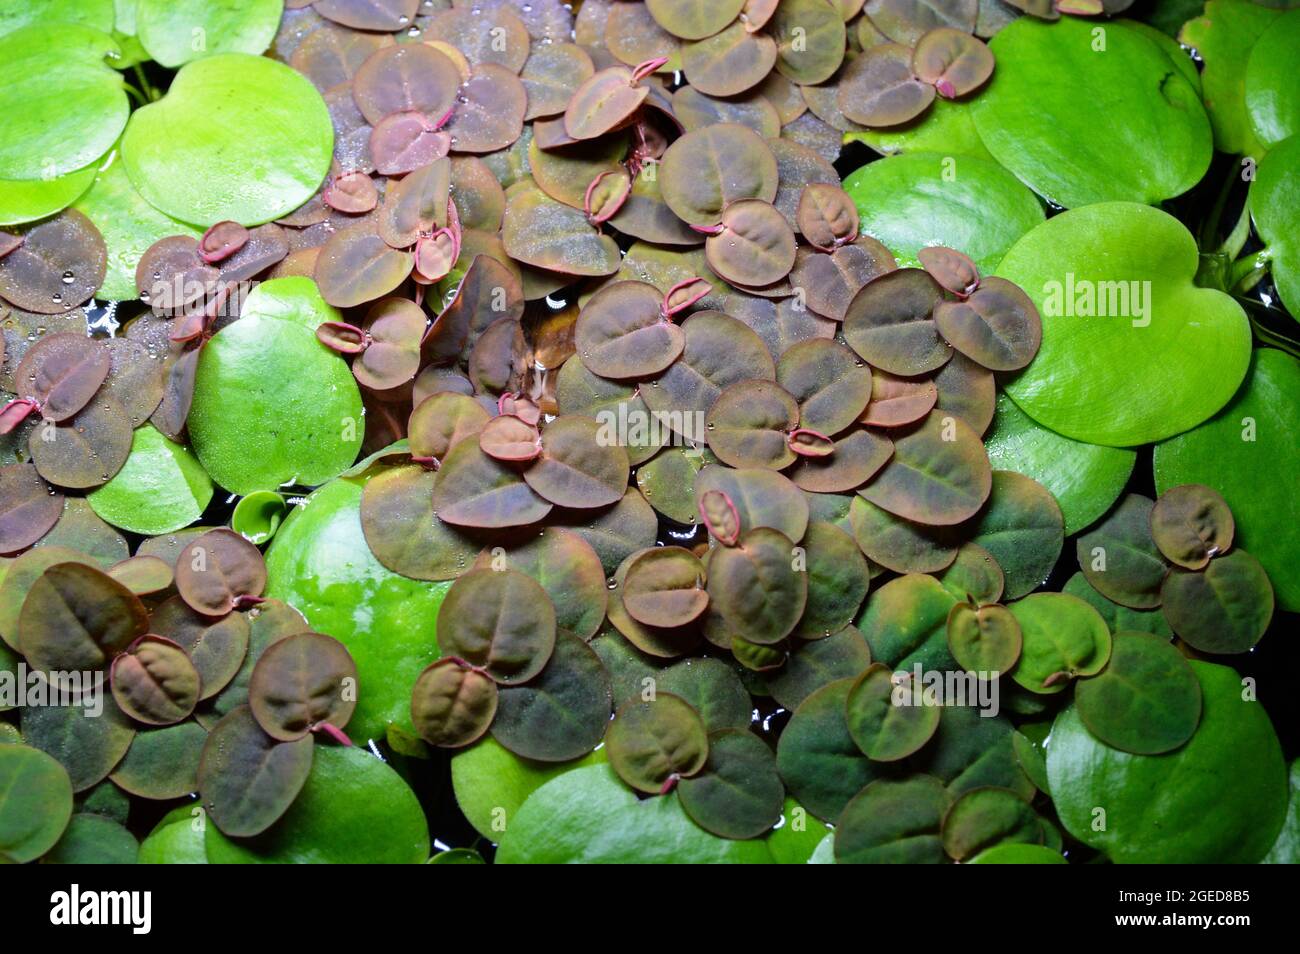 Schwimmende Aquariumpflanze oder Fischbecken, Seerosenart. Phyllanthus Fluitans und Limnobium laevigatum. Stockfoto